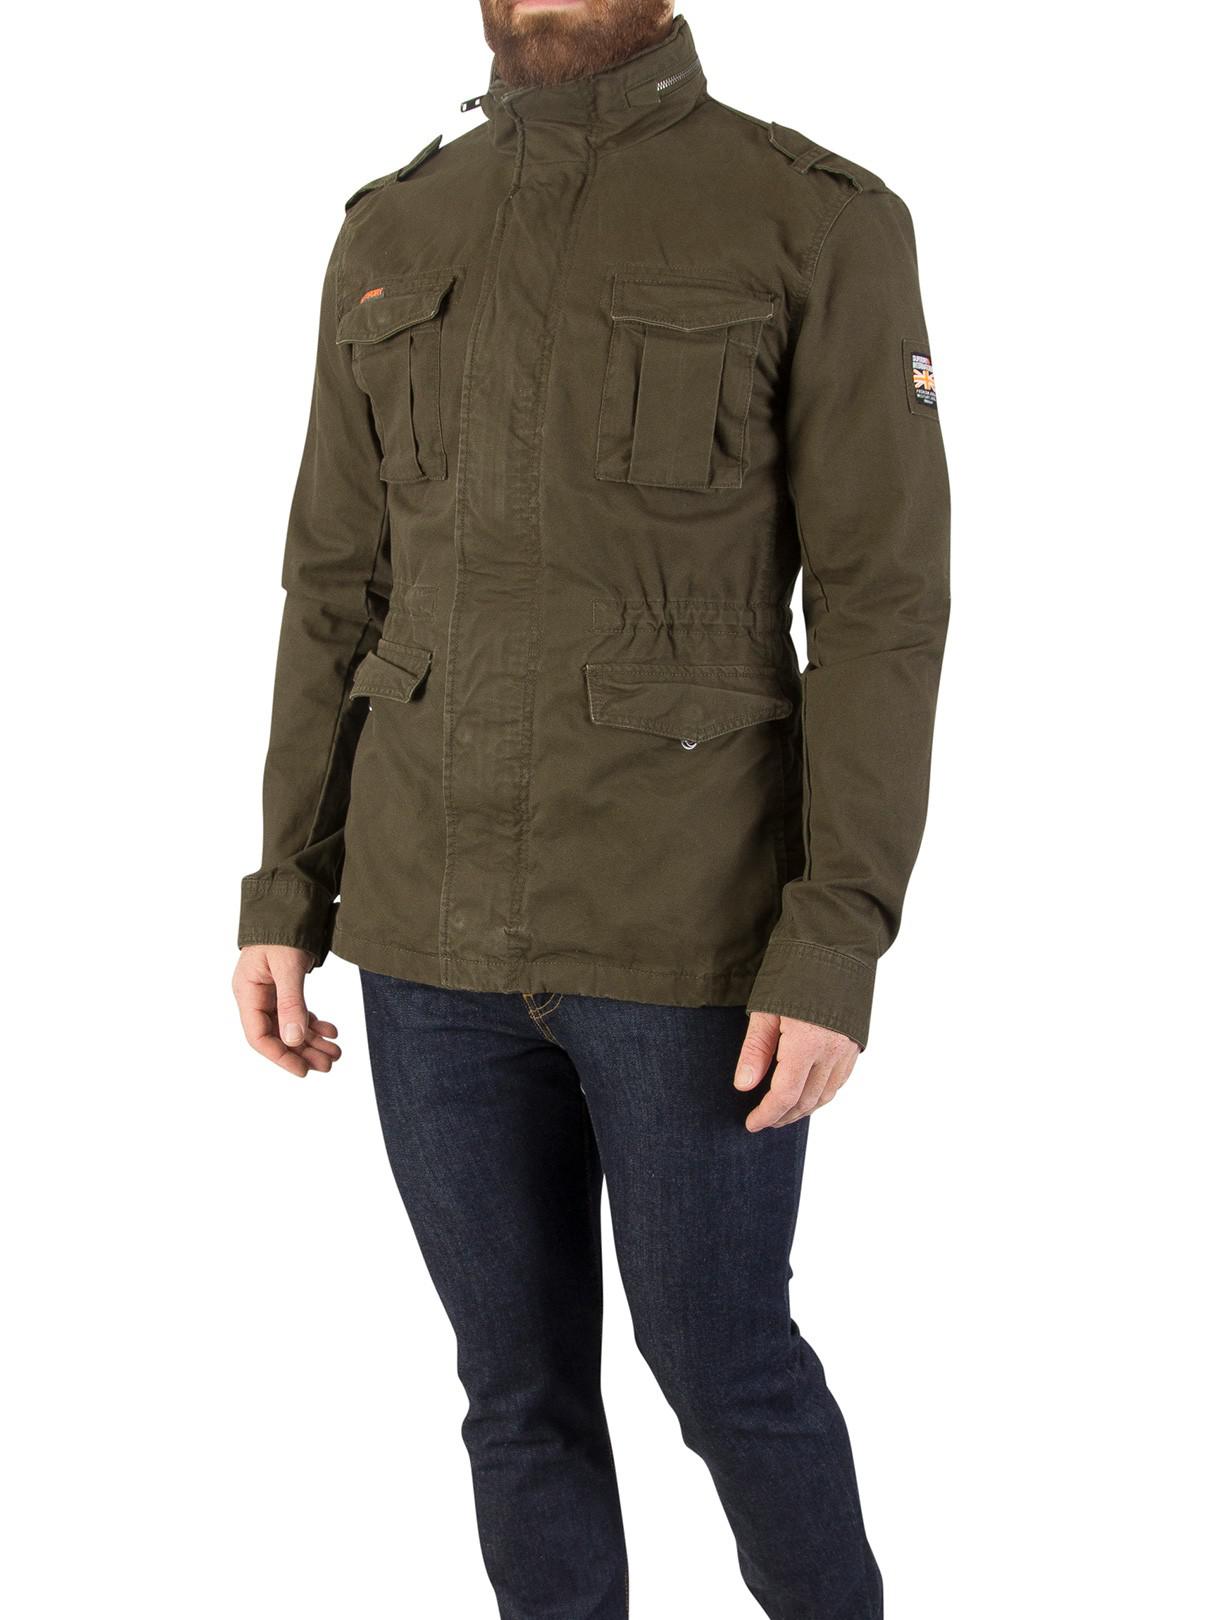 Superdry Wool Dark Khaki Rookie Heavy Weather Field Jacket for Men - Lyst